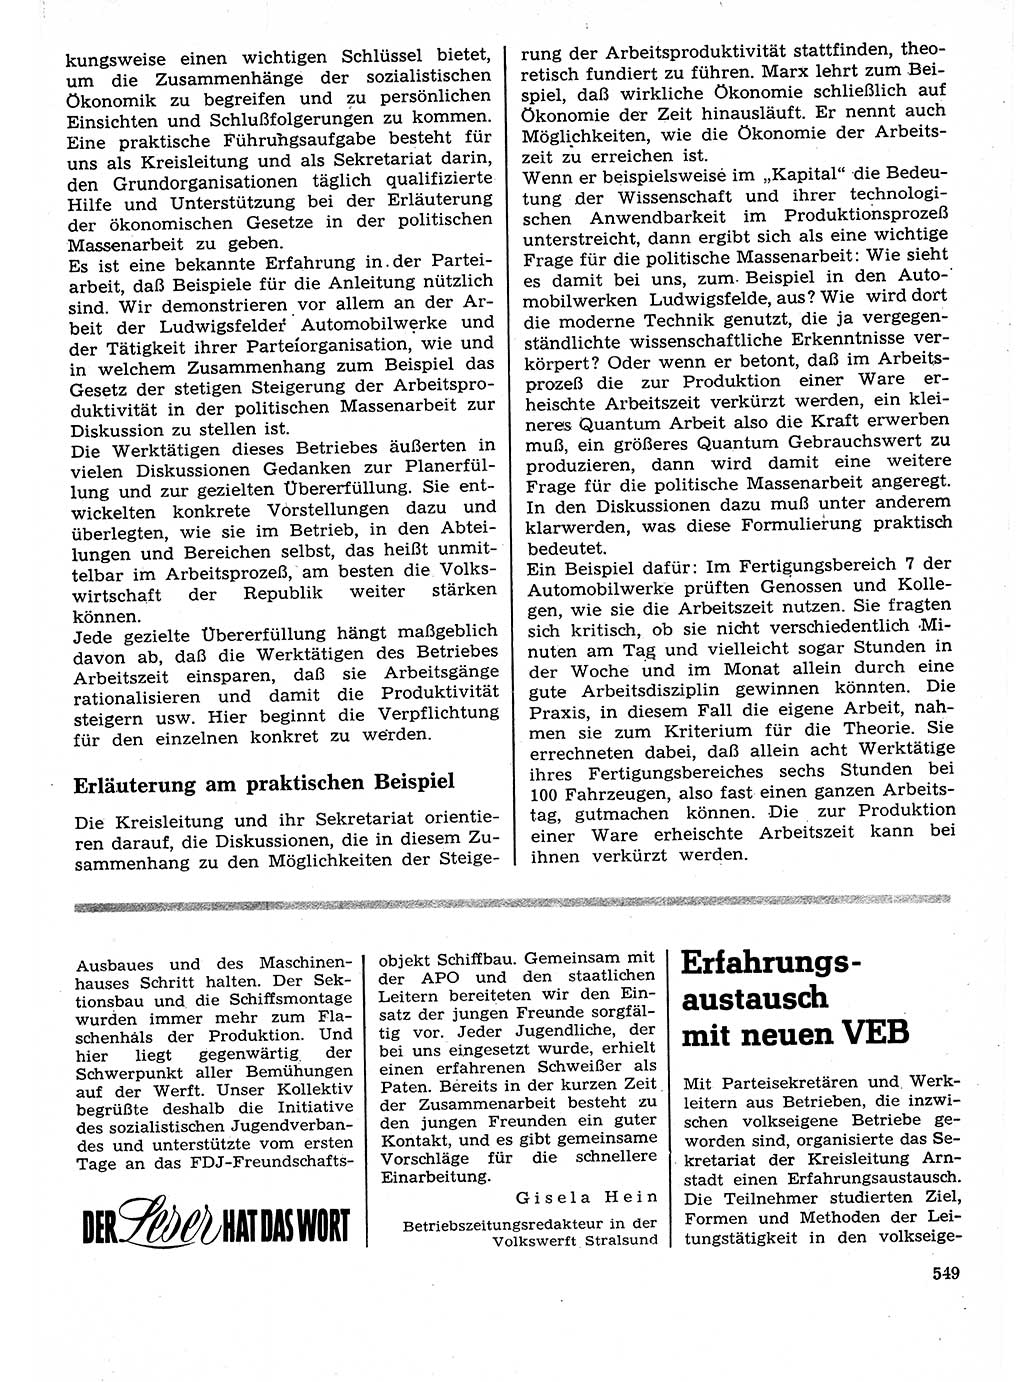 Neuer Weg (NW), Organ des Zentralkomitees (ZK) der SED (Sozialistische Einheitspartei Deutschlands) für Fragen des Parteilebens, 27. Jahrgang [Deutsche Demokratische Republik (DDR)] 1972, Seite 549 (NW ZK SED DDR 1972, S. 549)